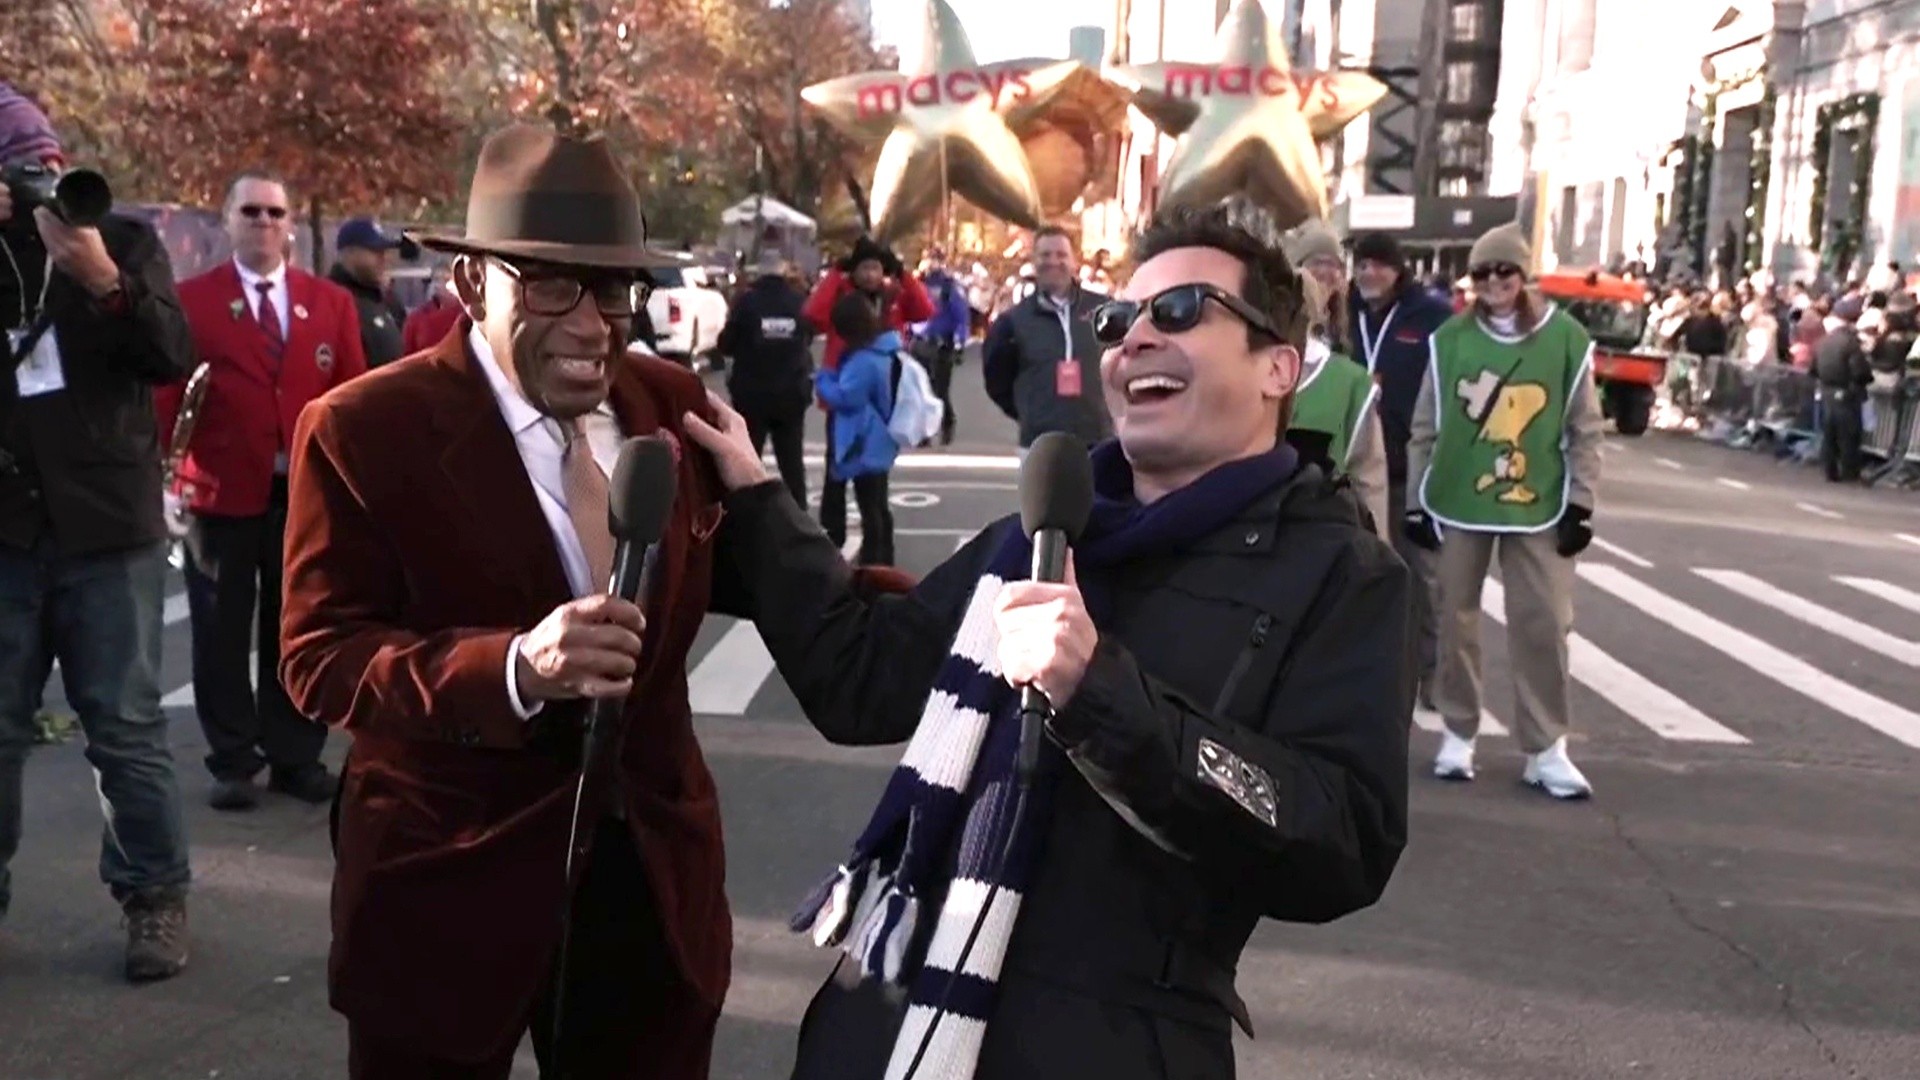 Jimmy Fallon talks holiday song, performing at Thanksgiving parade